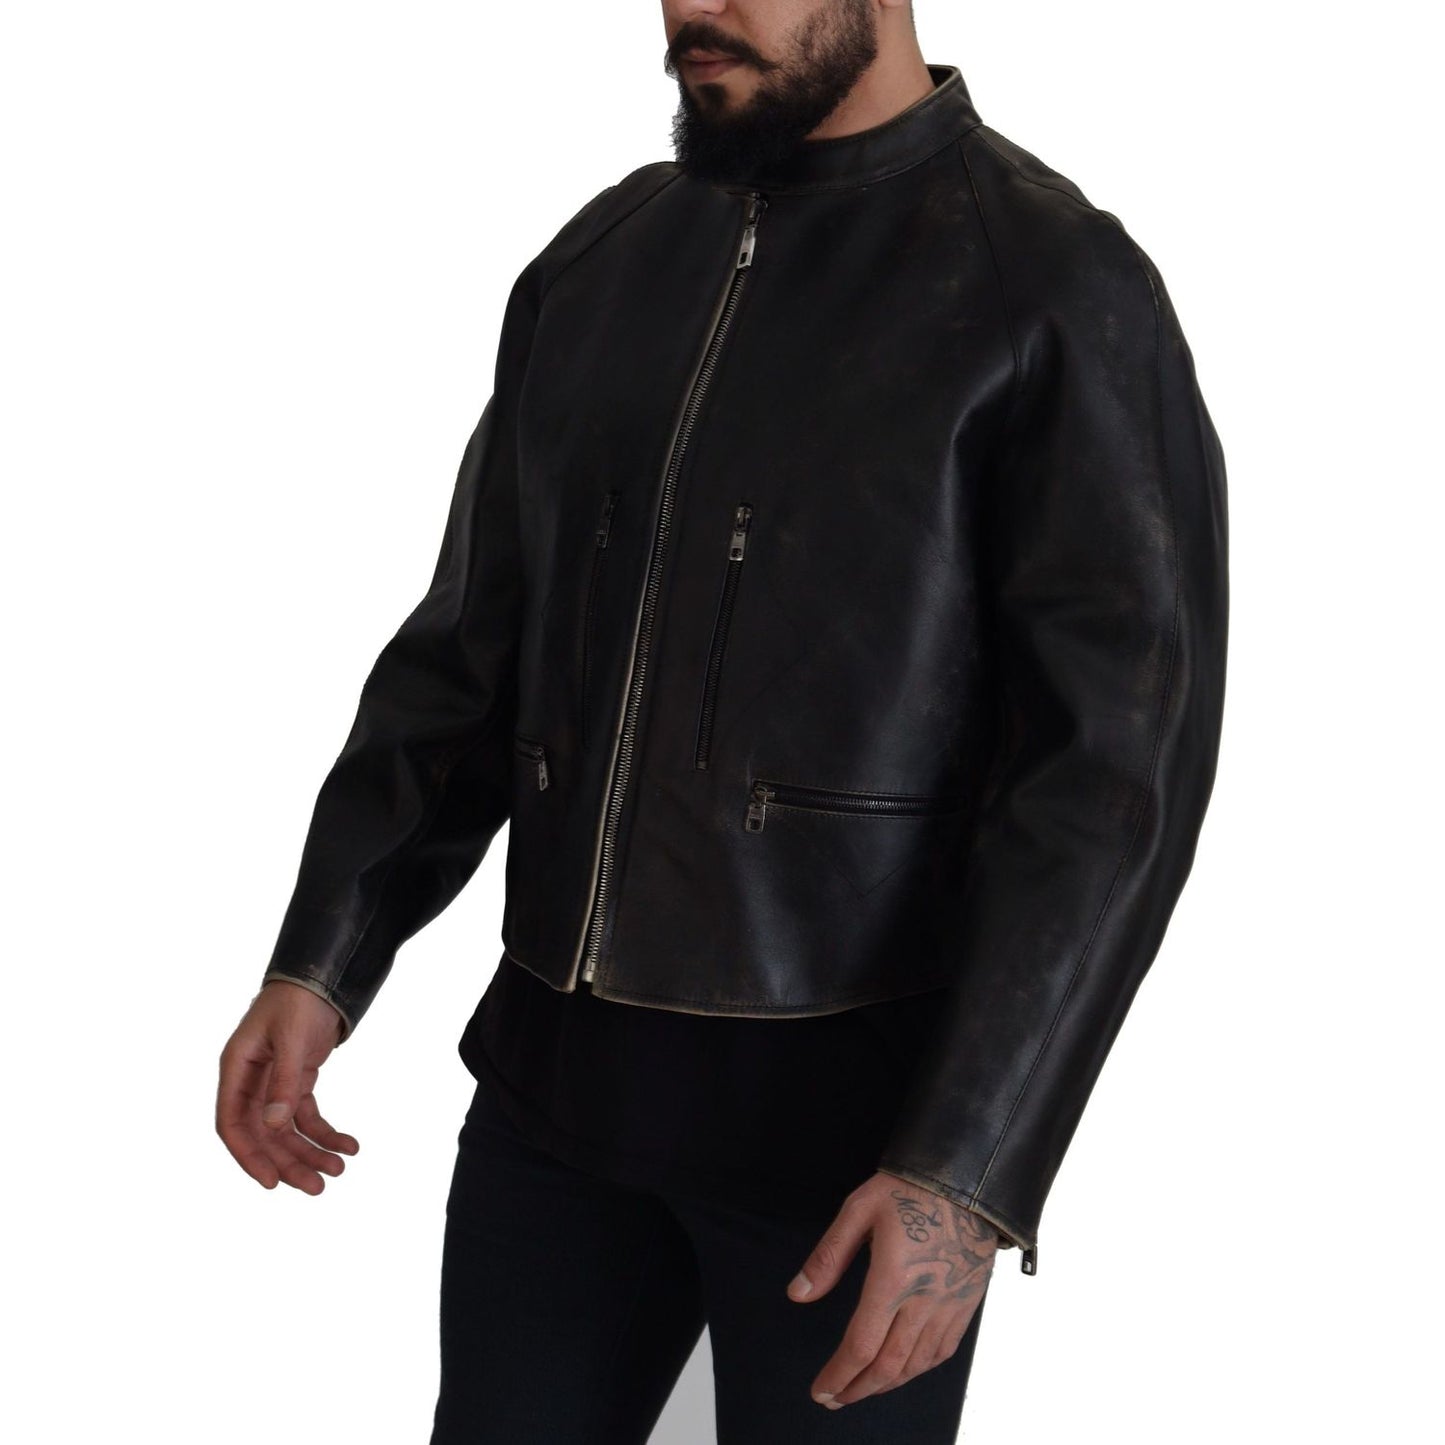 Dolce & Gabbana Elegant Black Leather Jacket with Silver Details black-leather-zipper-biker-coat-jacket